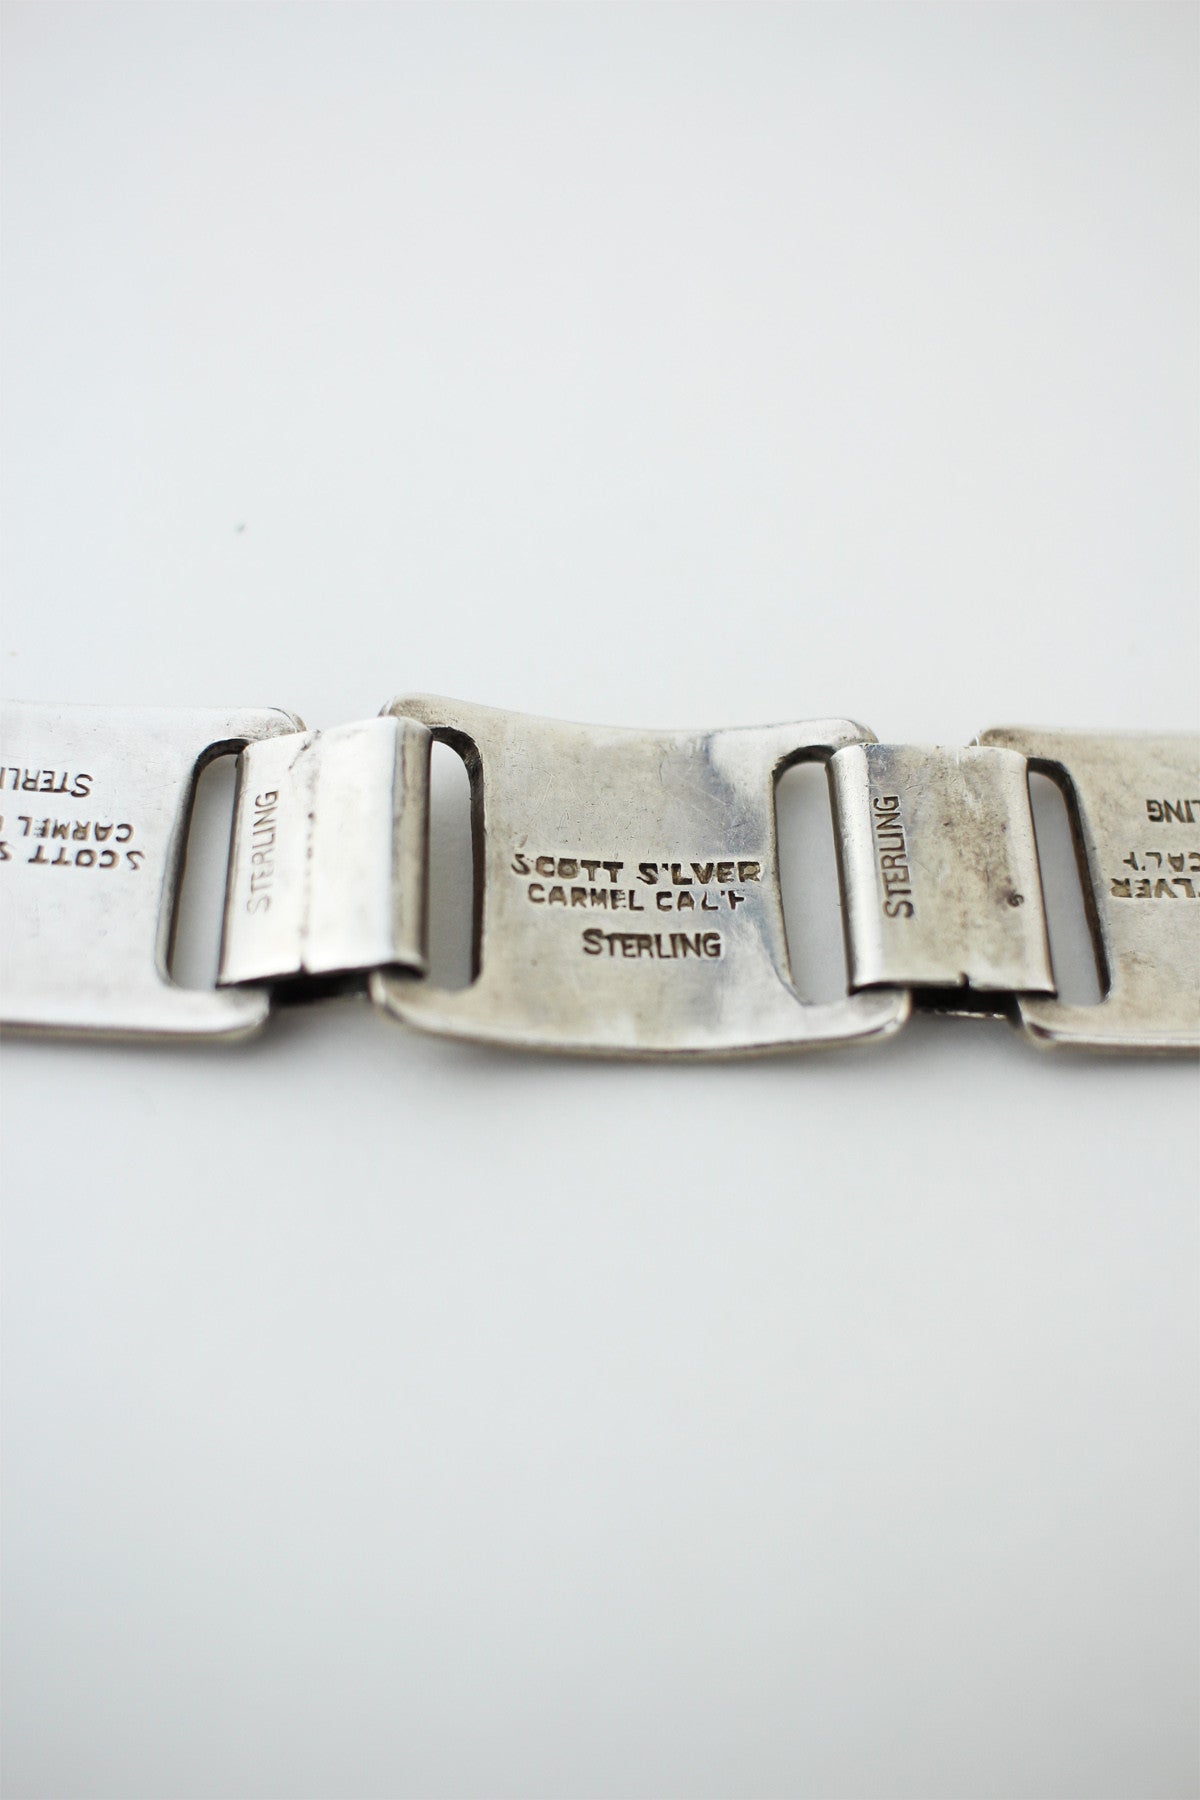 Vintage 1940s Heavy Sterling Silver Link Bracelet 44 grams